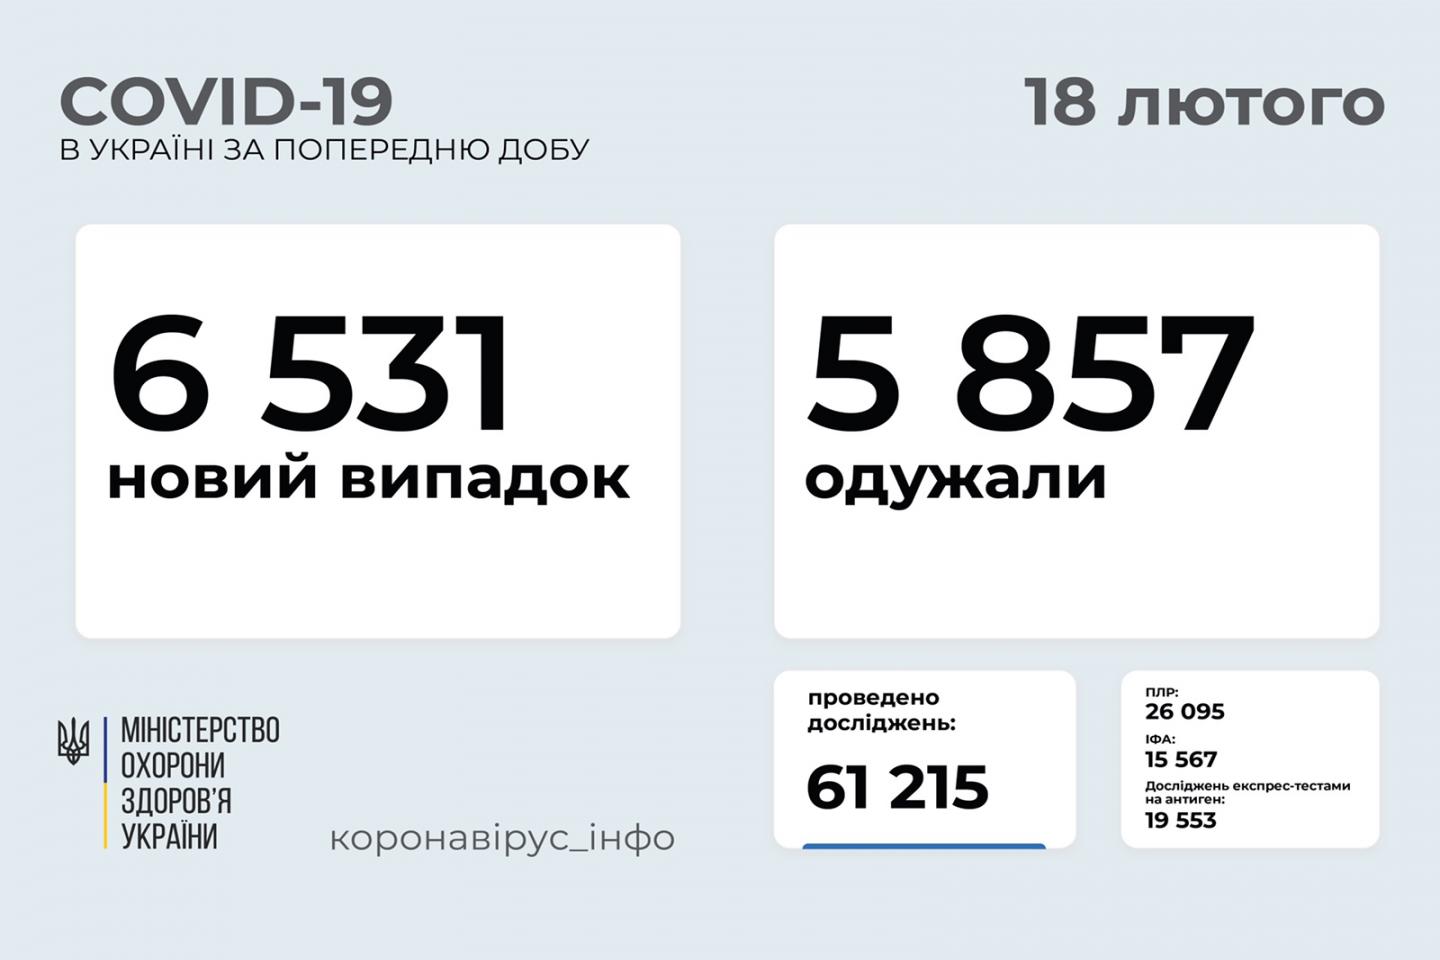 http://dunrada.gov.ua/uploadfile/archive_news/2021/02/19/2021-02-19_9709/images/images-28084.jpg